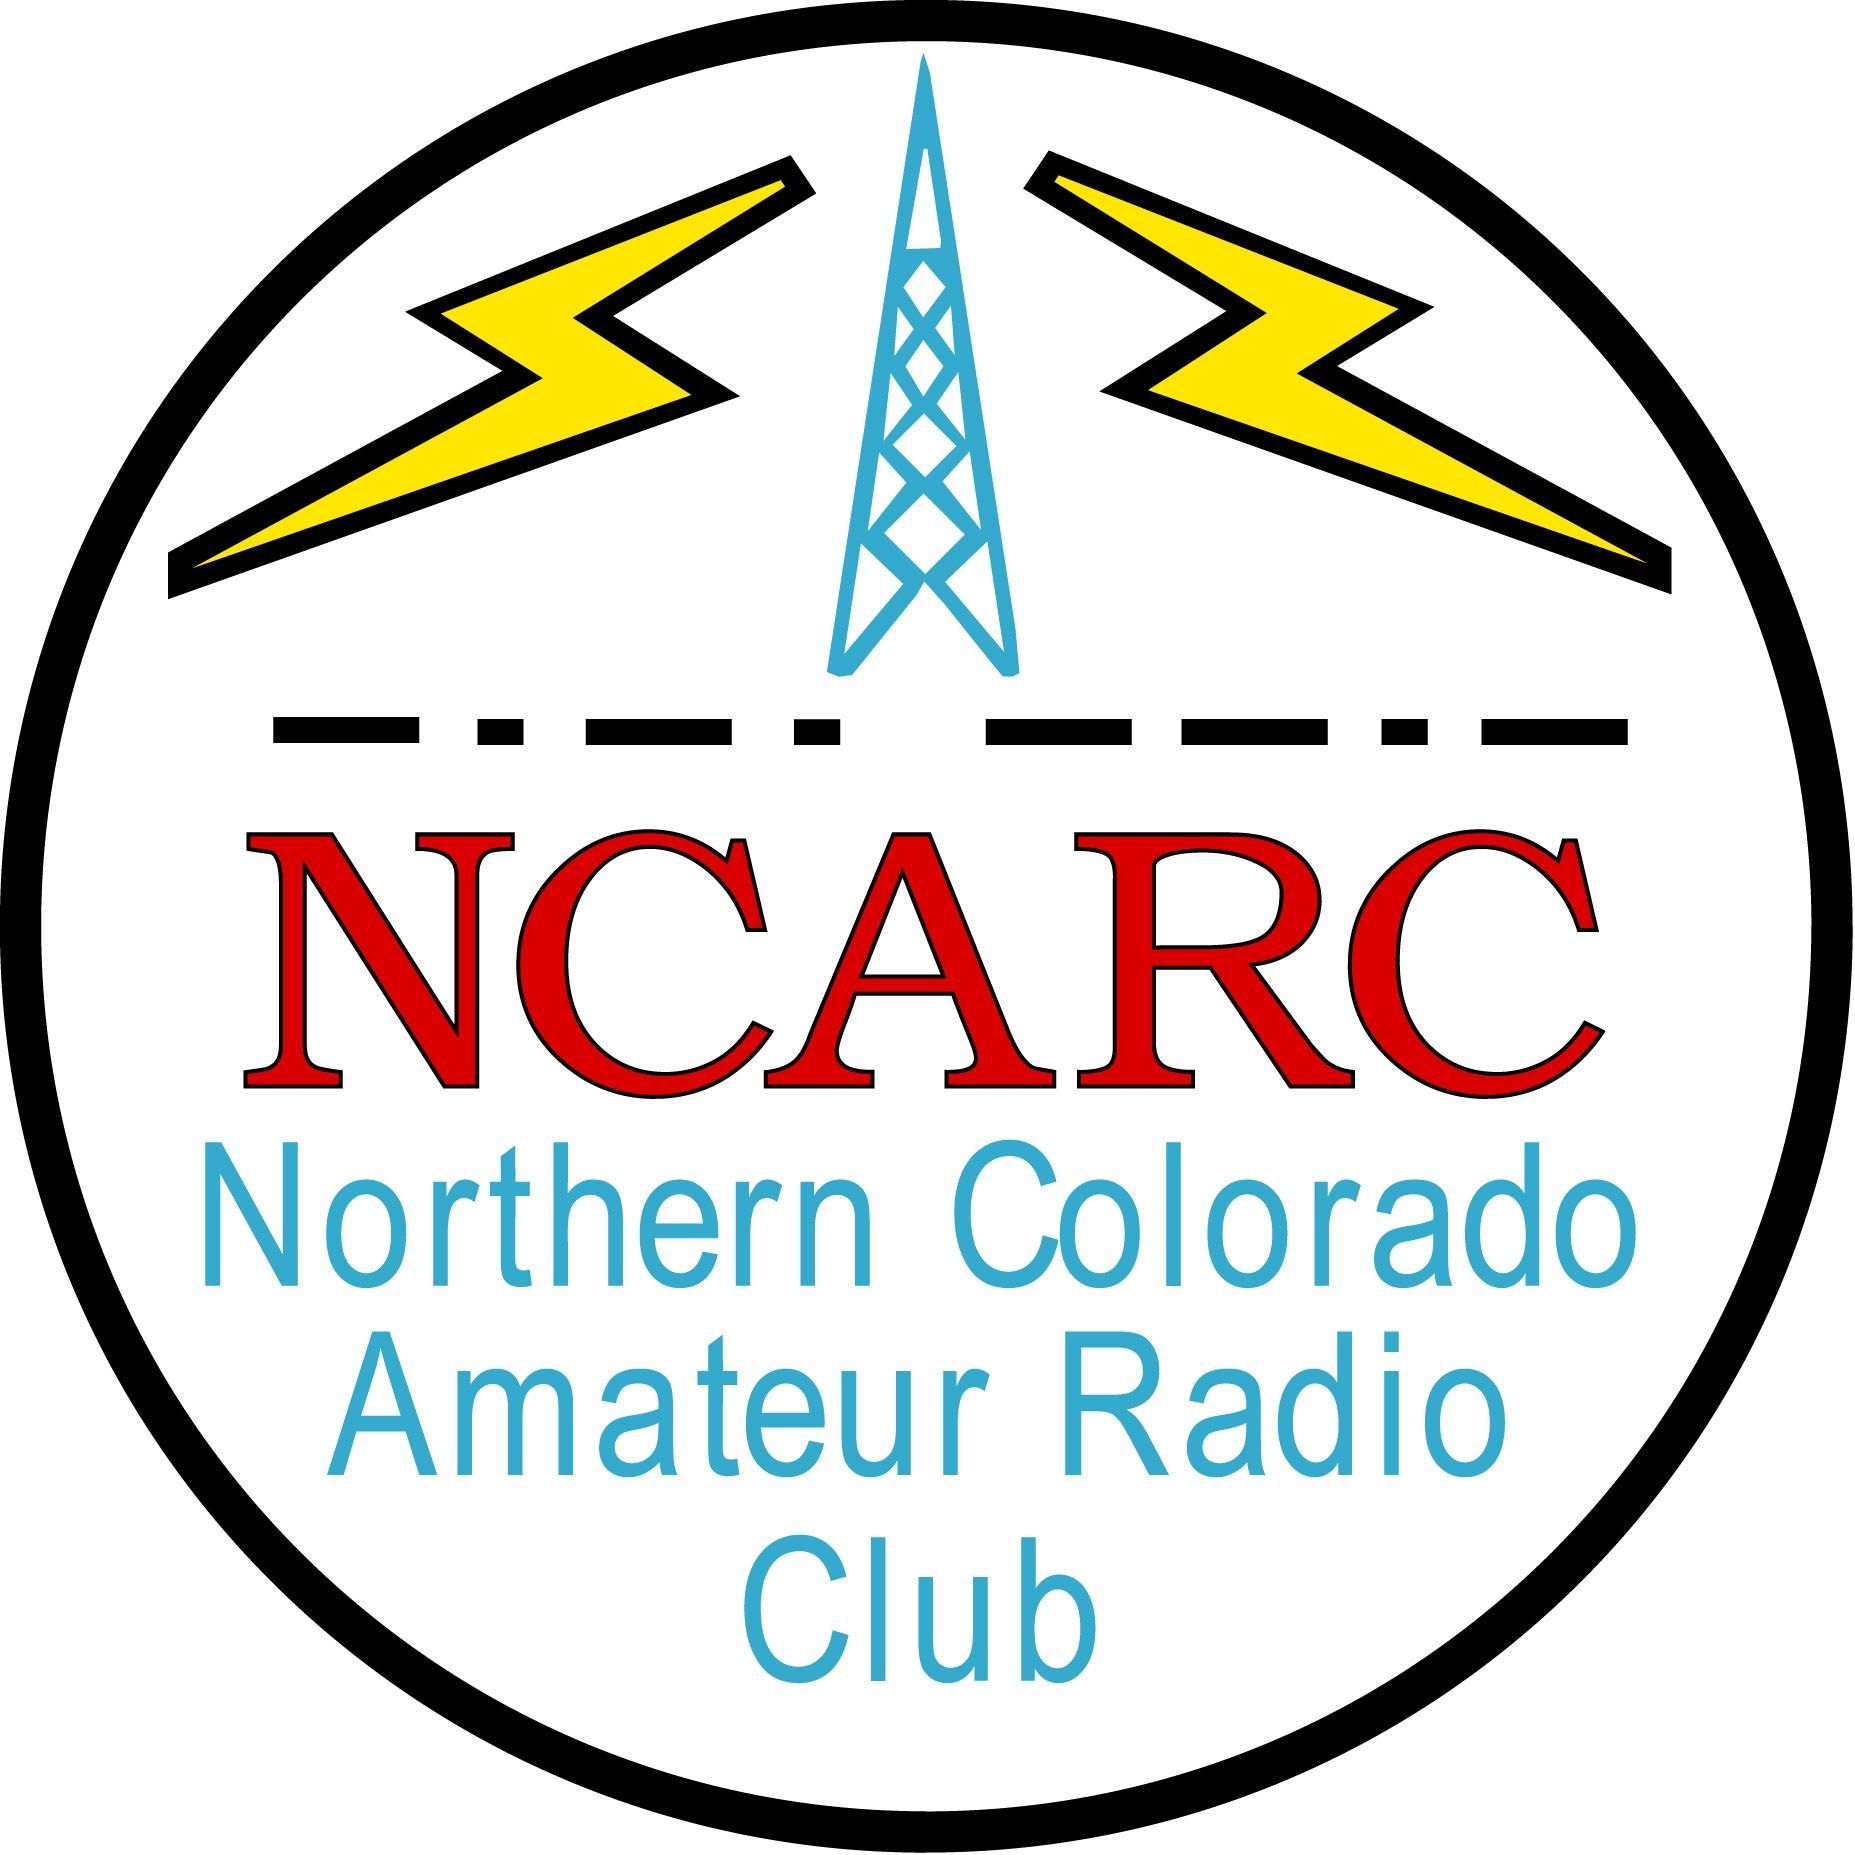 Northern Colorado Amateur Radio Club